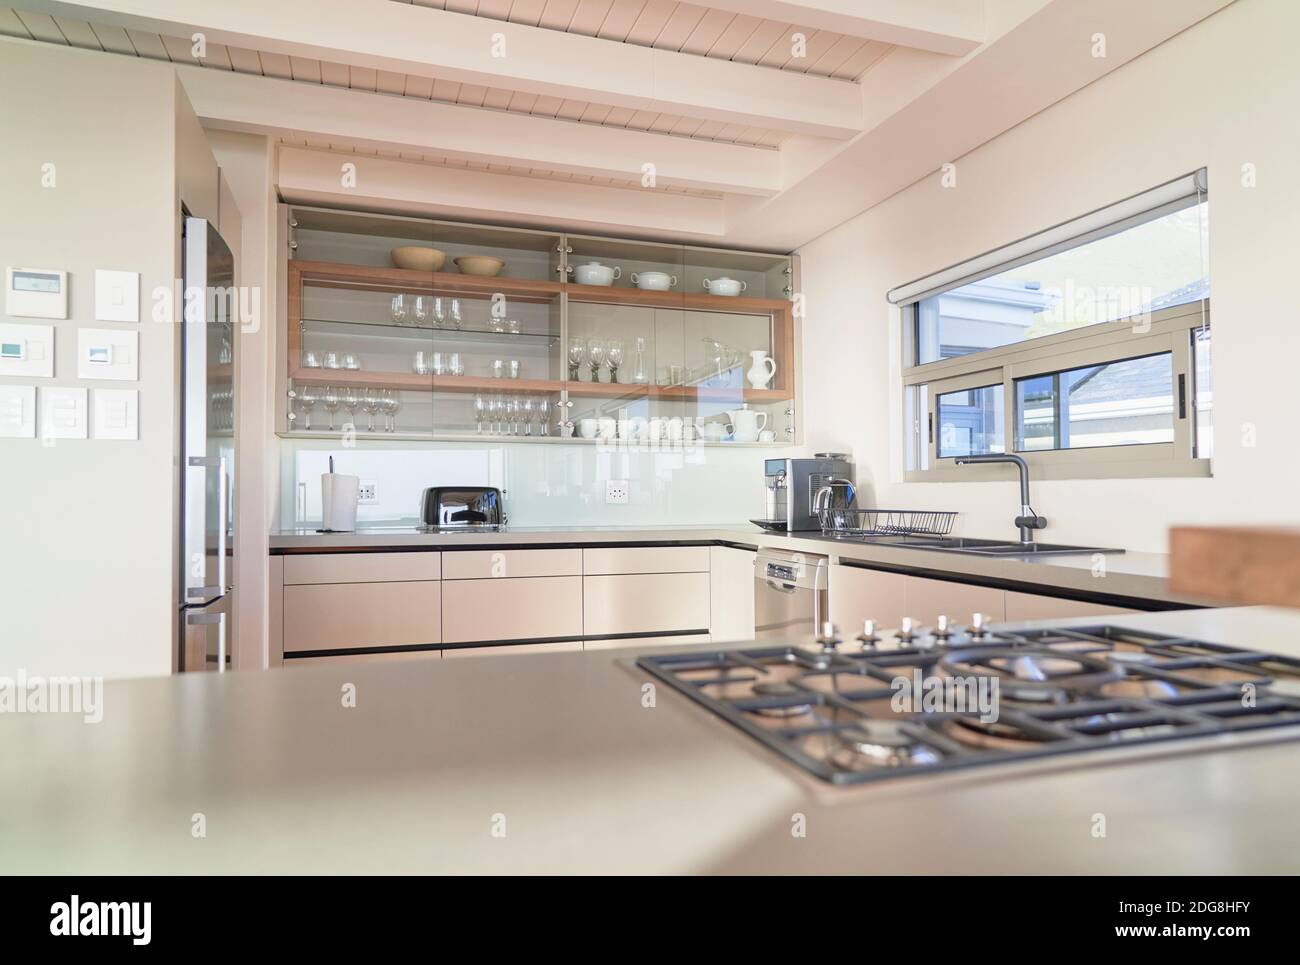 Modern home showcase interior kitchen Stock Photo